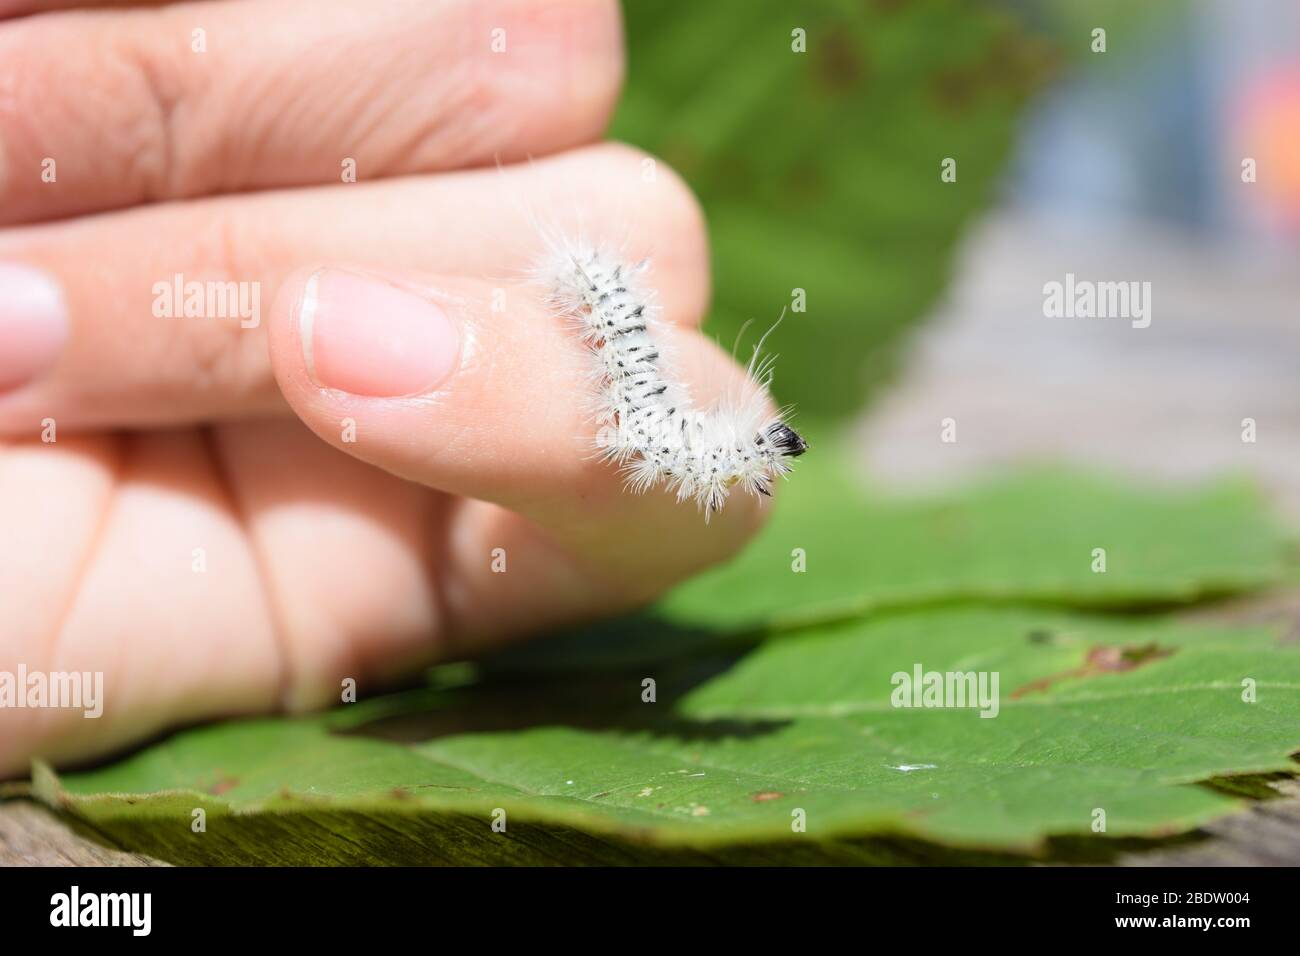 Fuzzy weißen Hickory Zwickel Motte Raupe. Insekt, das allergische Hautreaktionen, Hautausschlag, Juckreiz und Schwellungen verursachen kann. Stockfoto